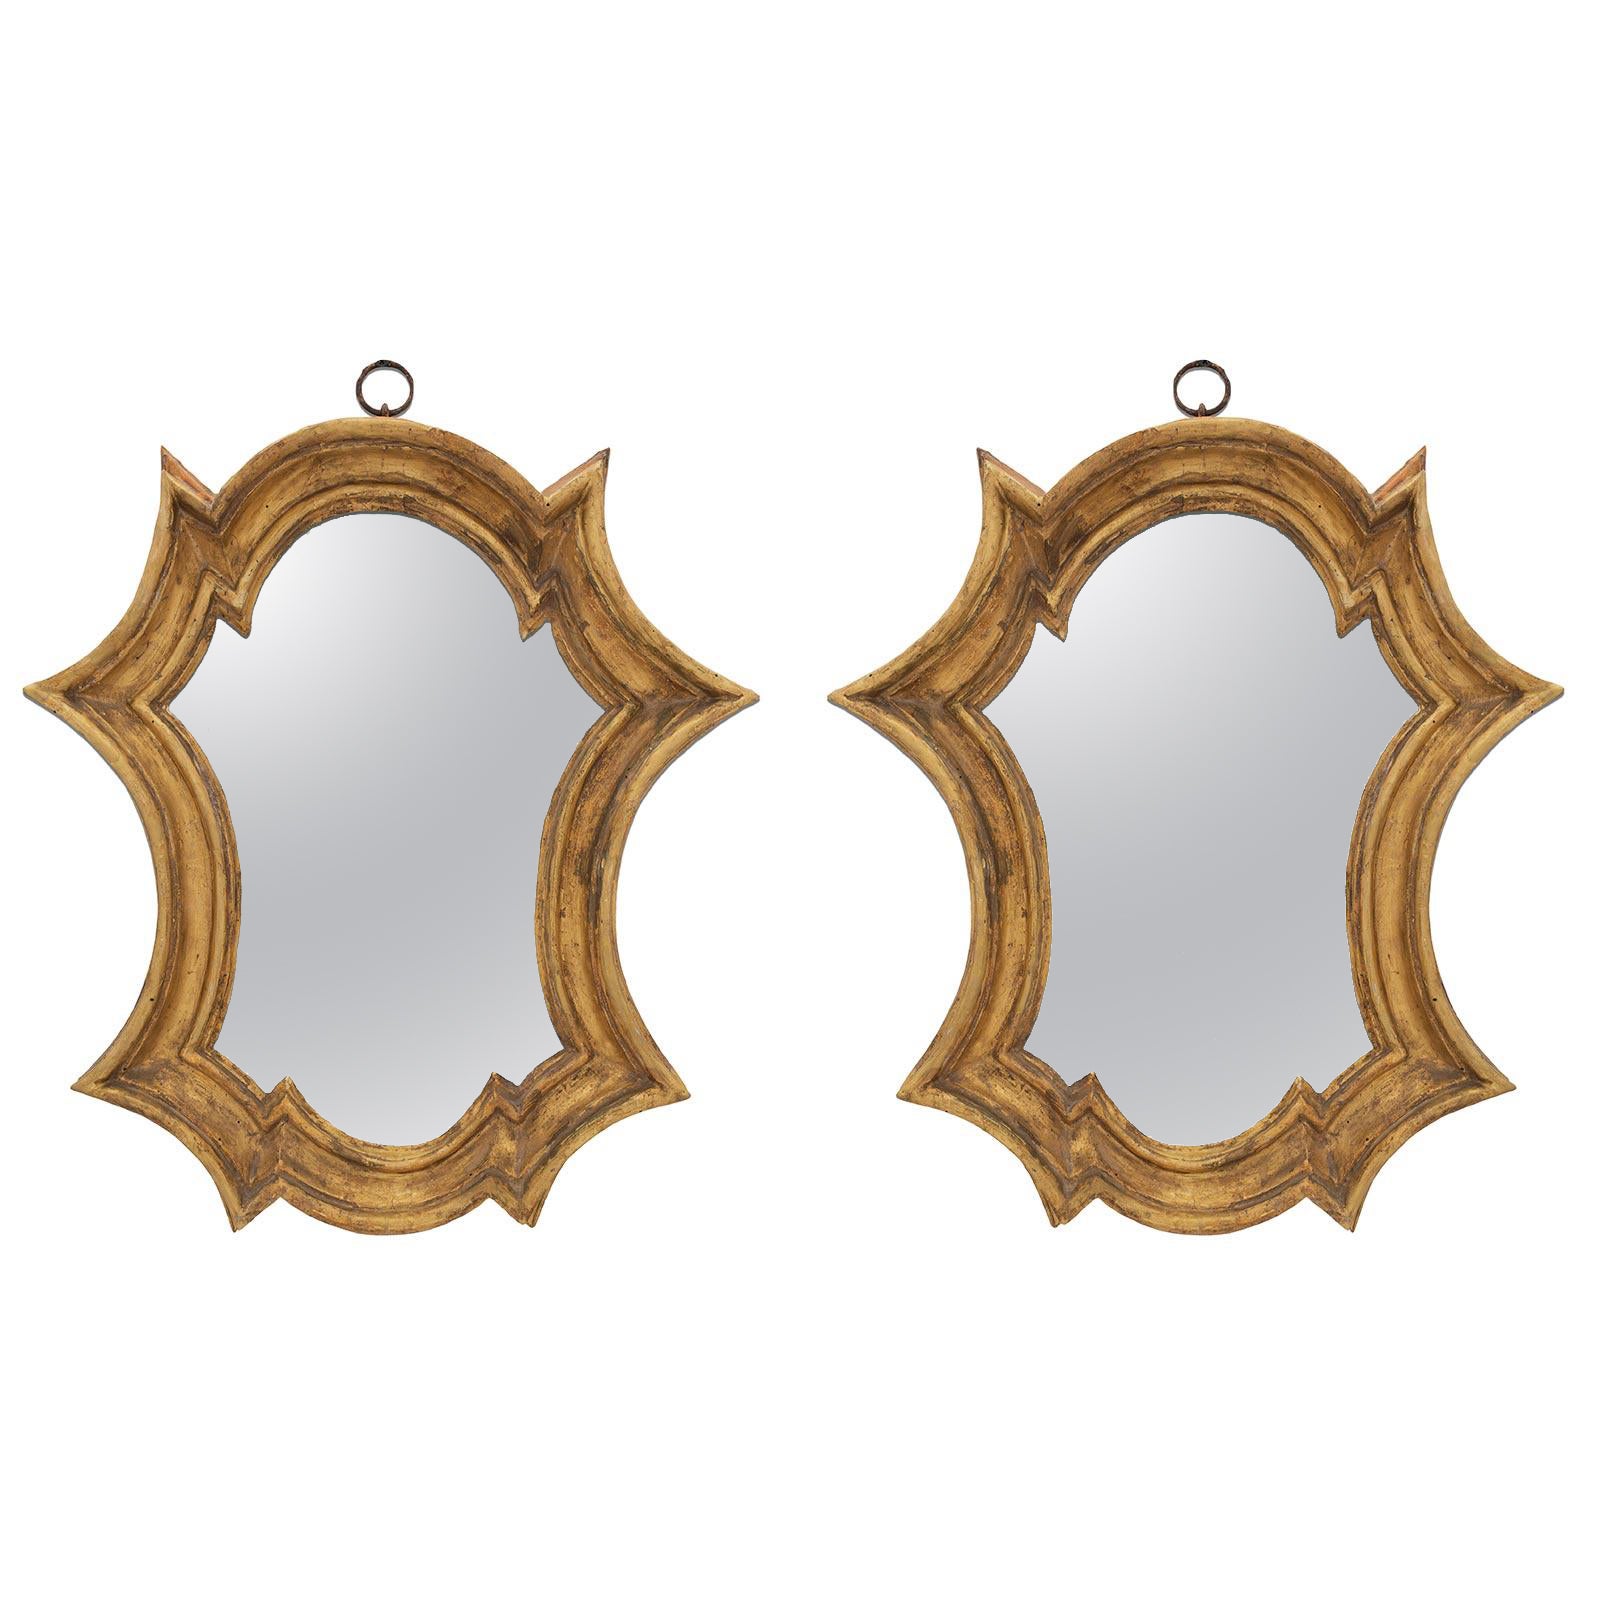 Paire de miroirs d'époque baroque italienne du début du XVIIIe siècle